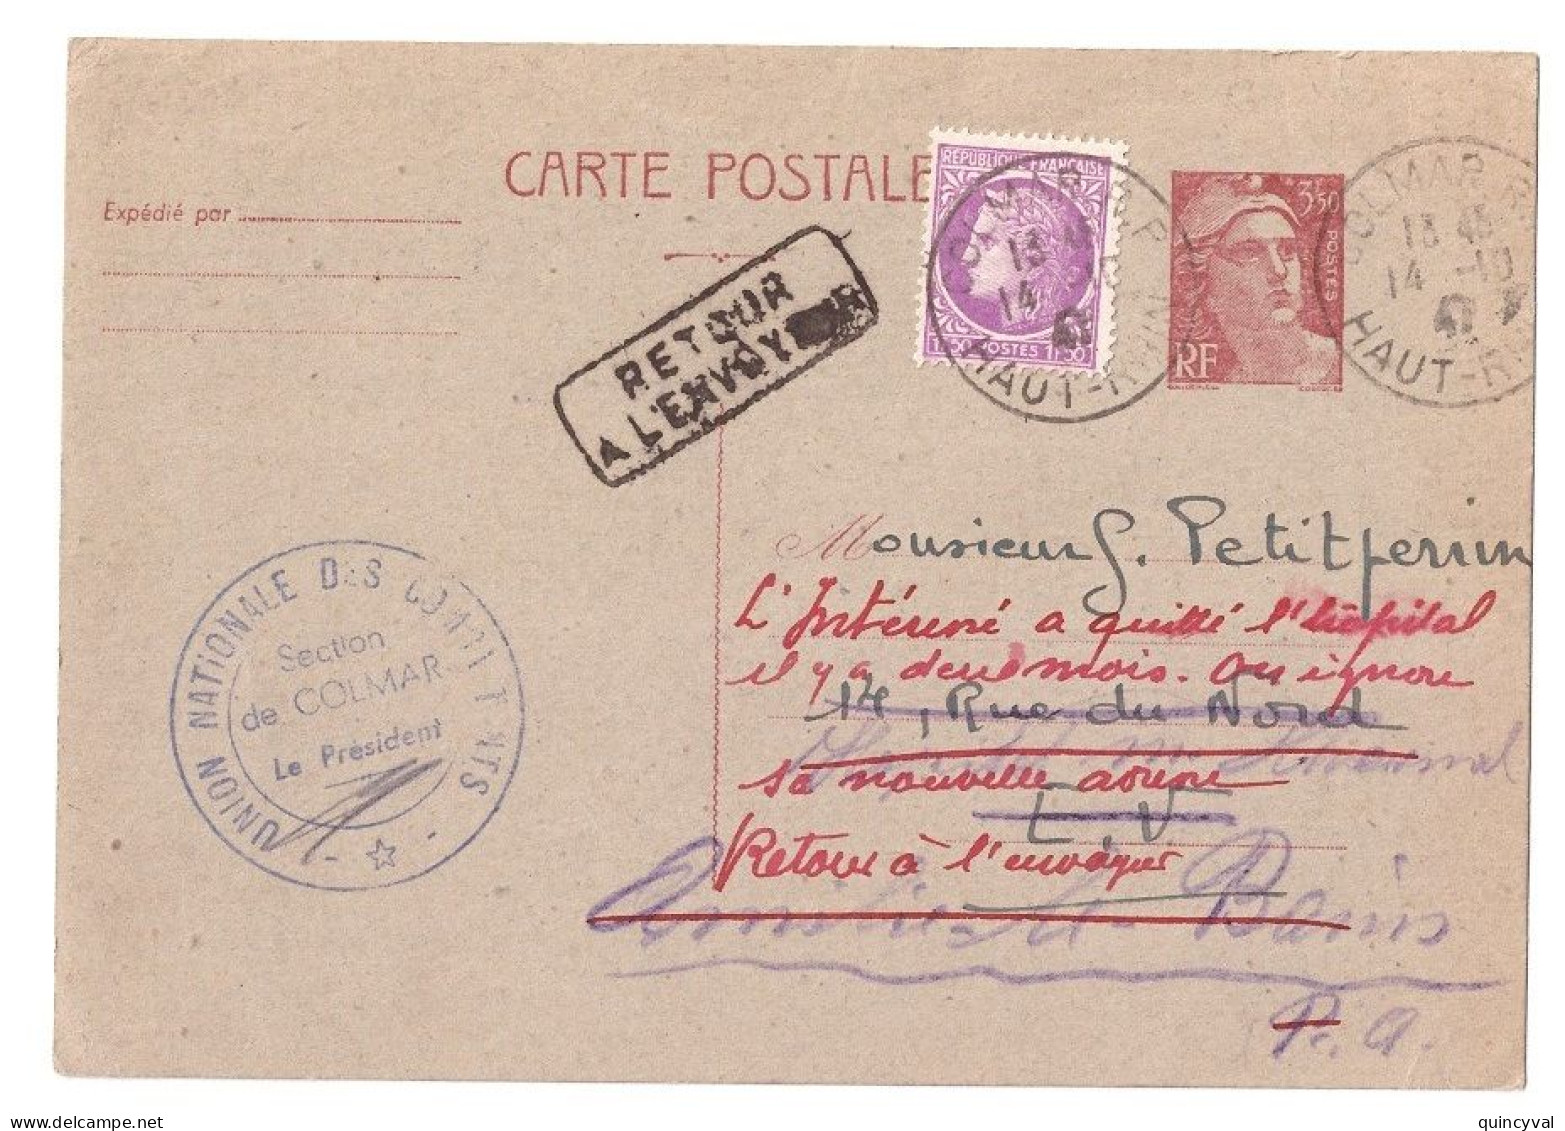 COLMAR RP Haut Rhin Carte Postale Entier 3,50 F Gandon Compl 1,50F Mazelin Retour Envoyeur Ob 14 10 1947 Yv 716B-CP2 - Standaardpostkaarten En TSC (Voor 1995)